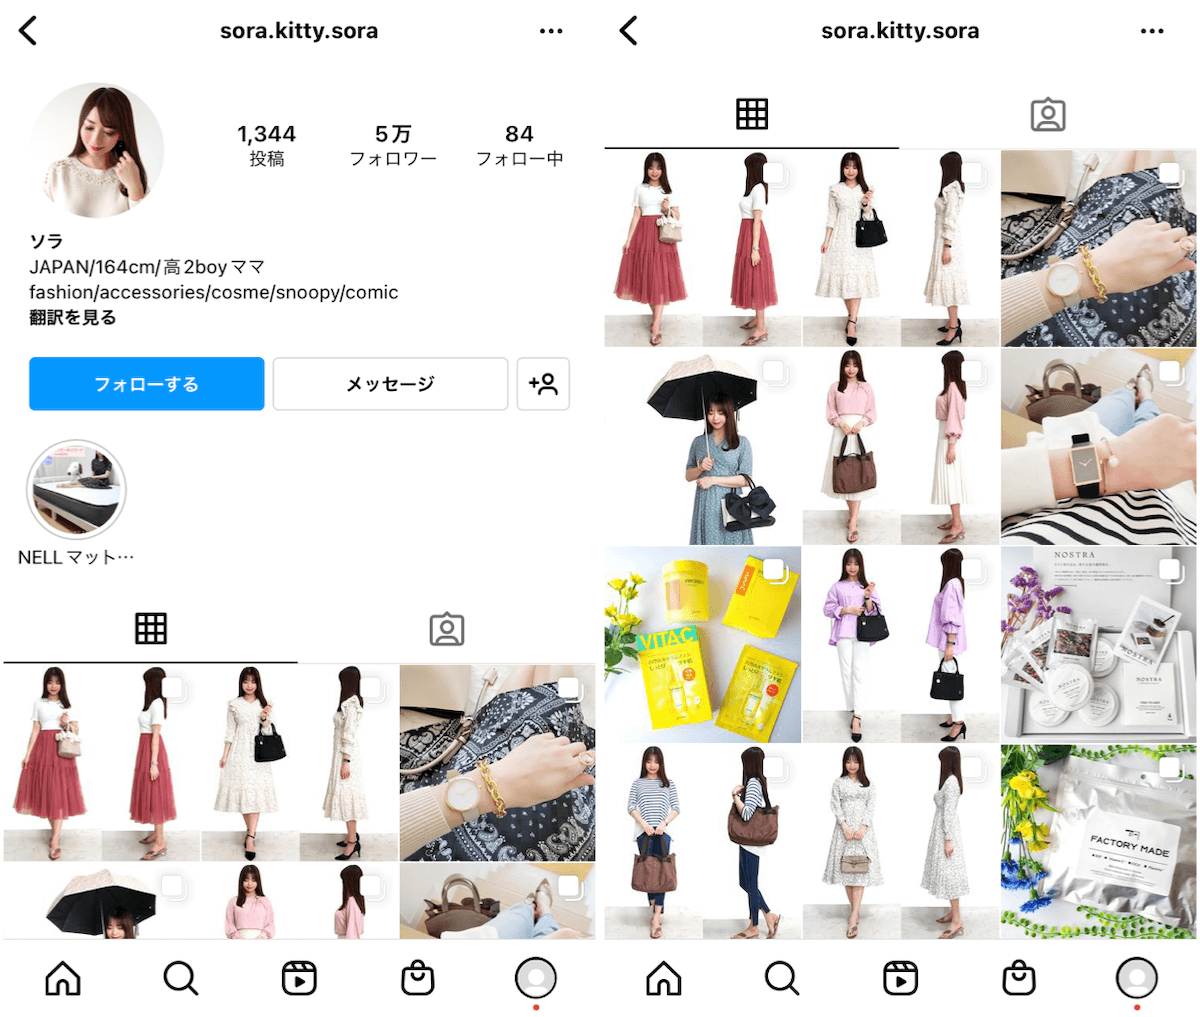 instagram-accessory-influencer-sora